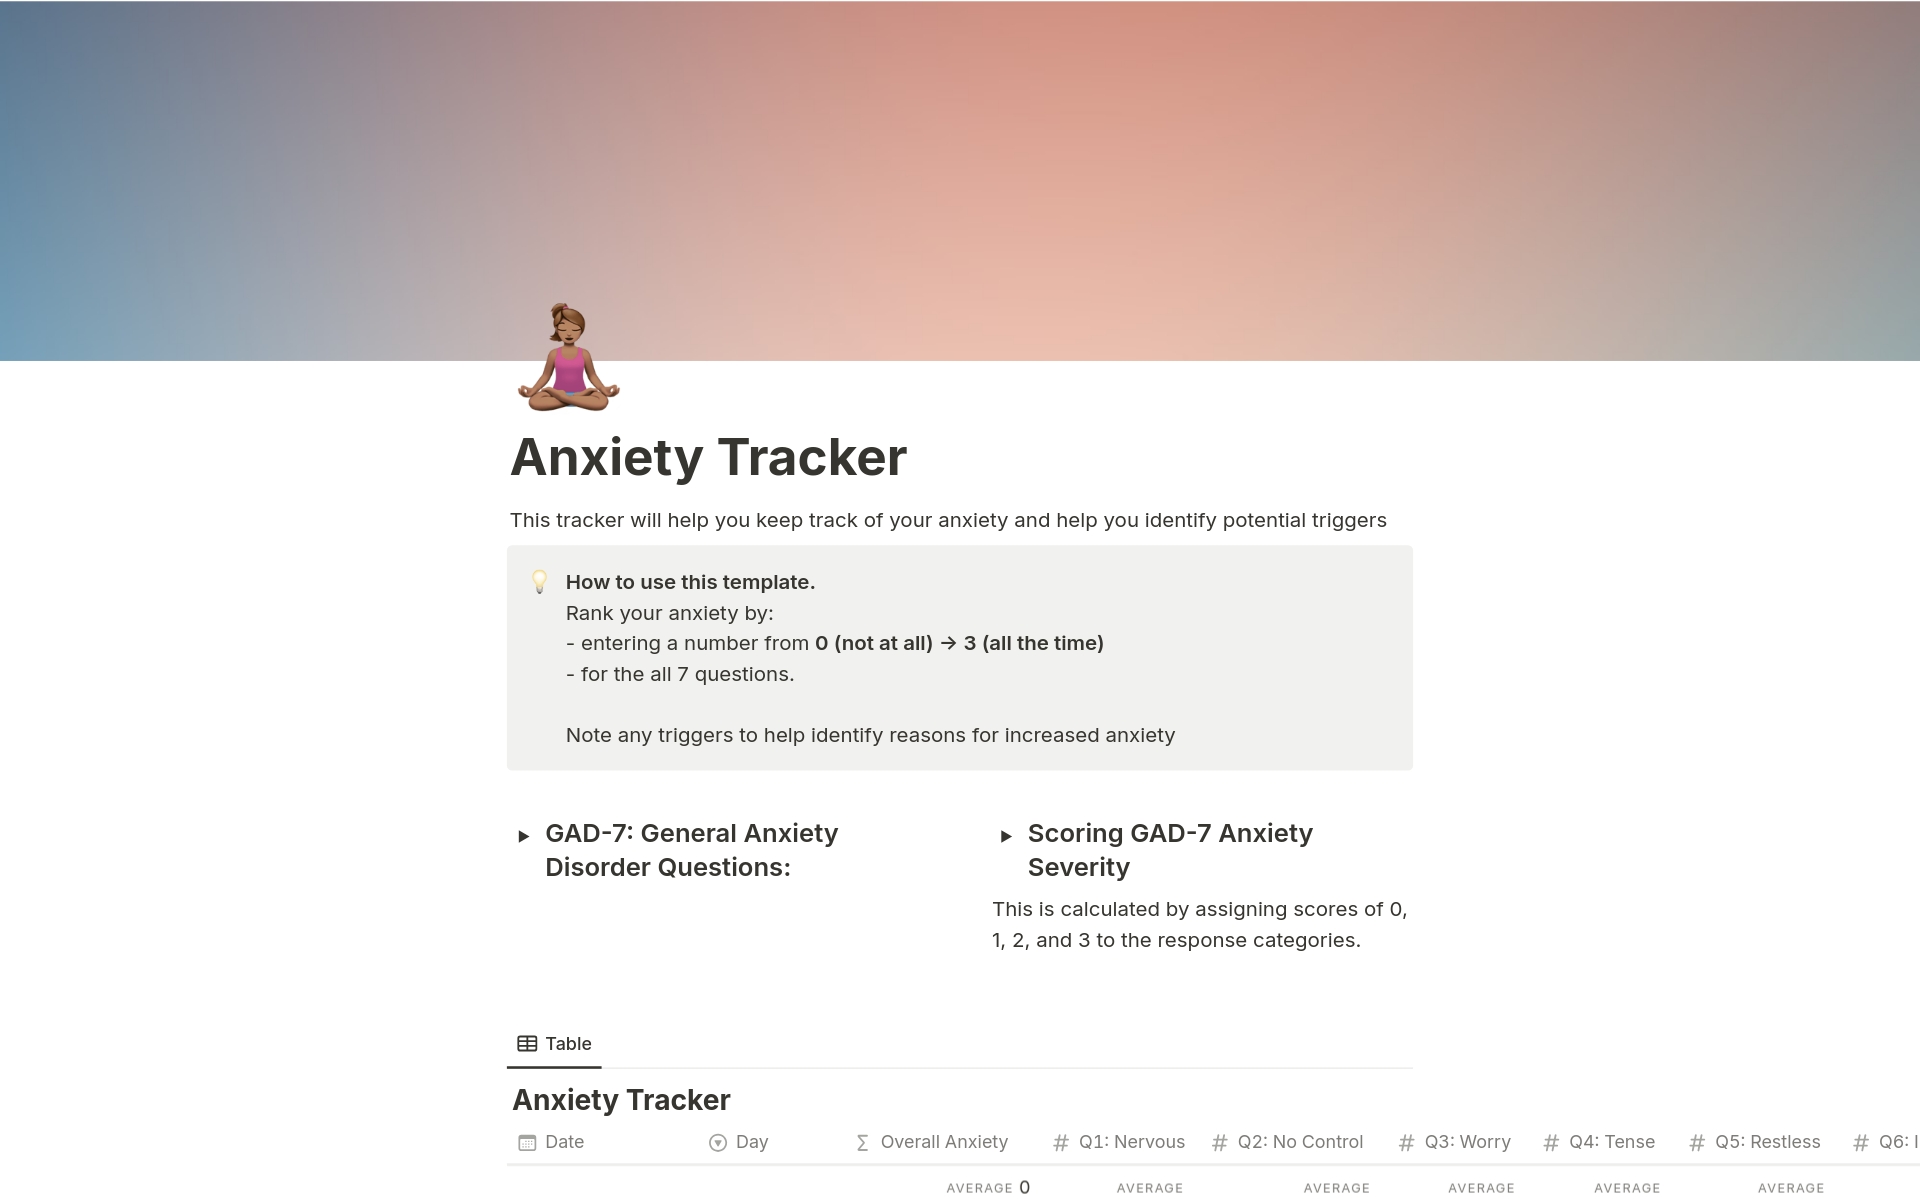 Vista previa de una plantilla para Anxiety Tracker